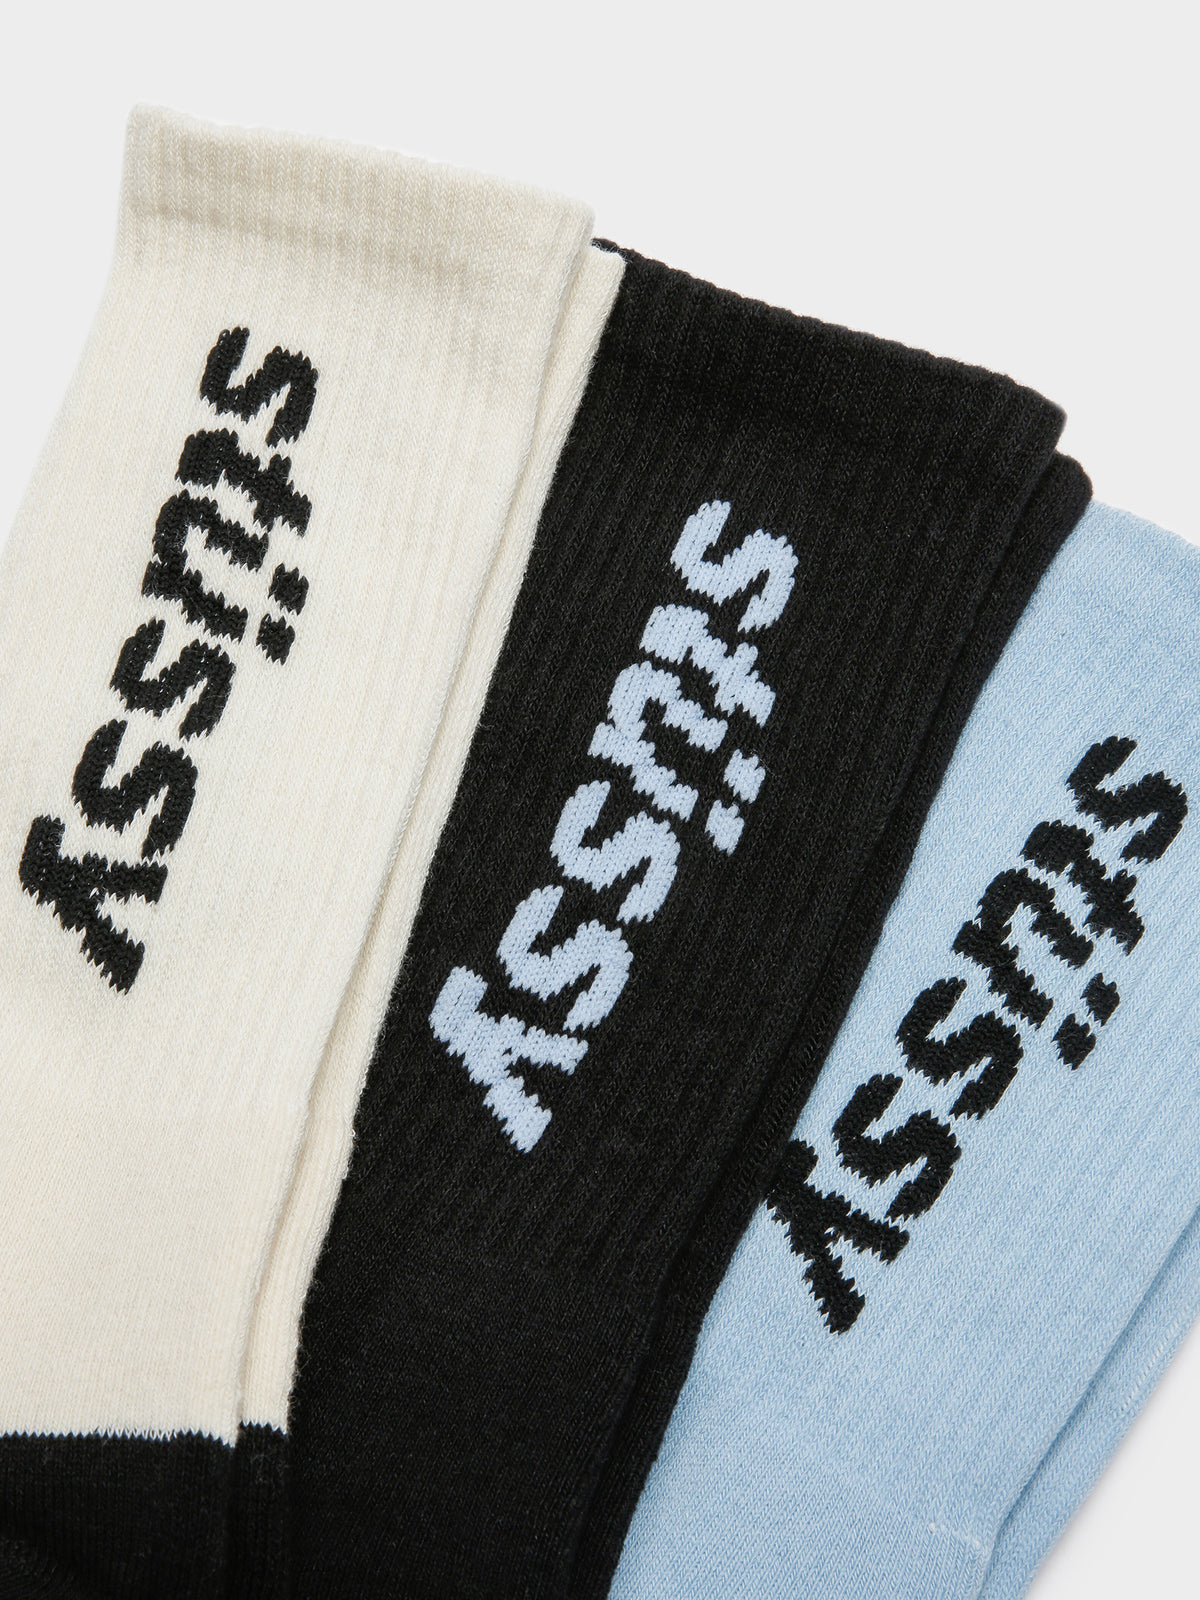 3 Pairs of Vertical Socks in White, Black &amp; Light Blue